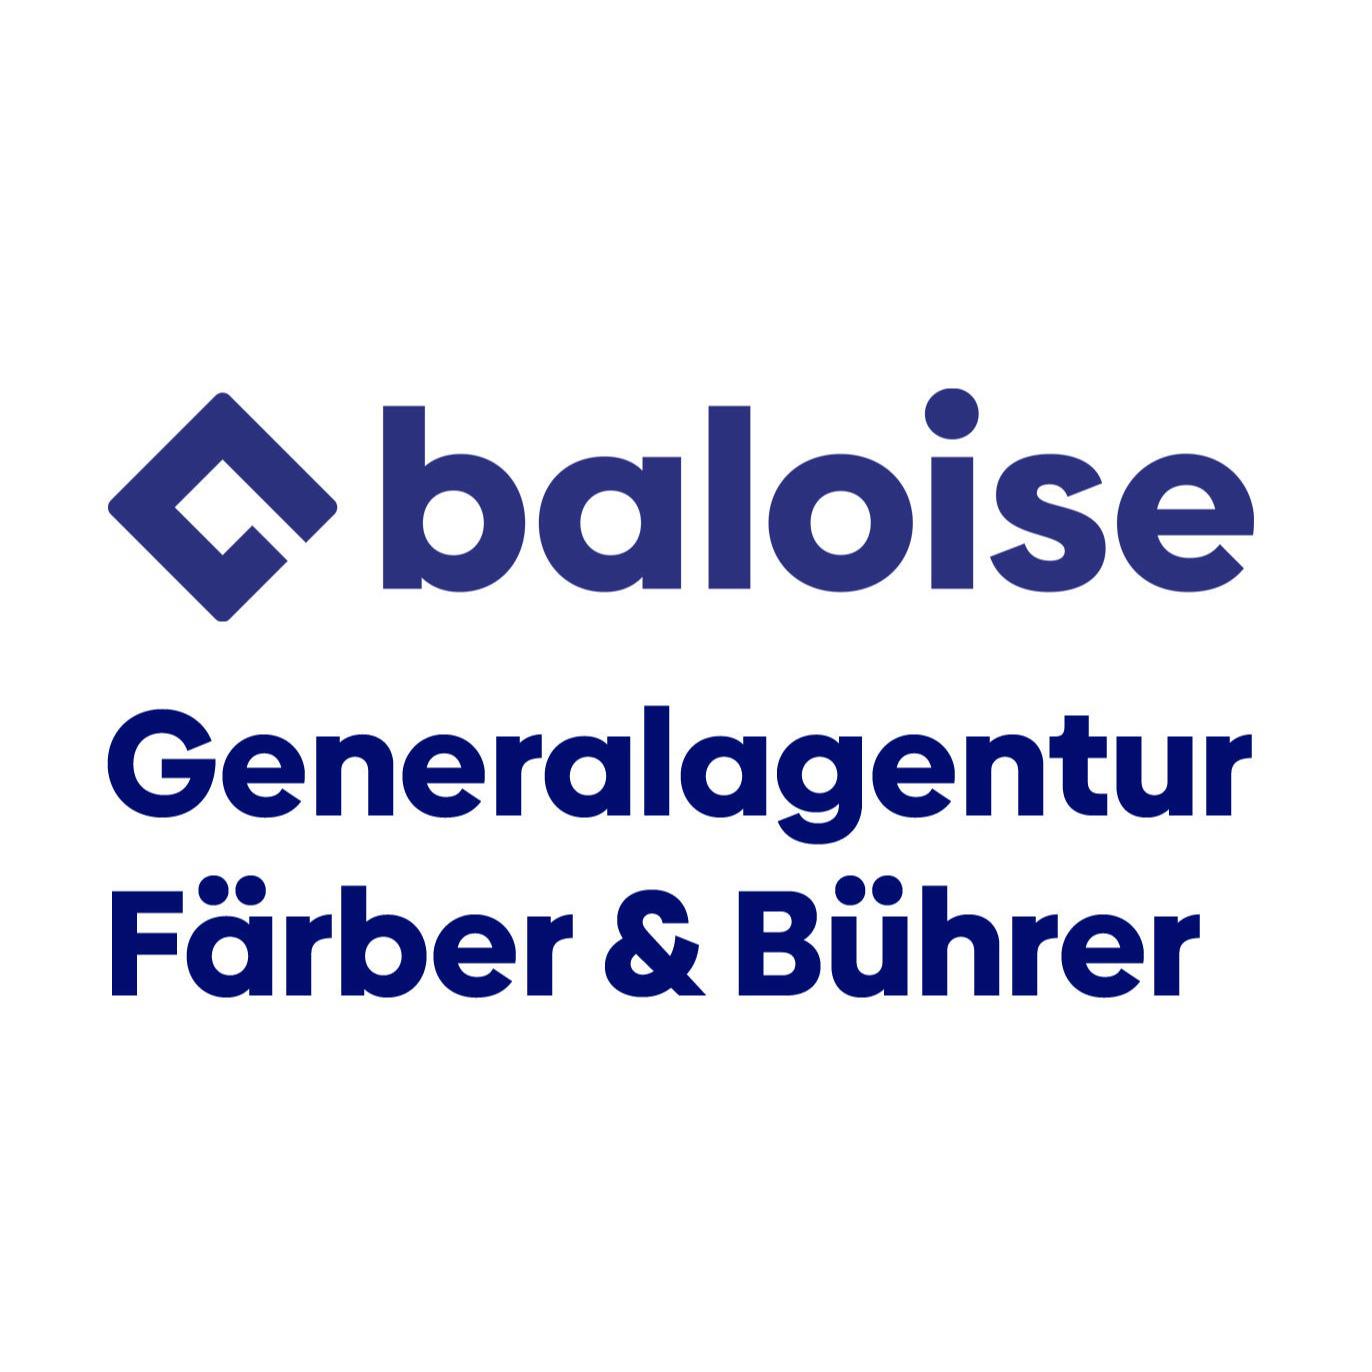 Baloise - Generalagentur Färber & Bührer in Herbolzheim in Herbolzheim im Breisgau - Logo